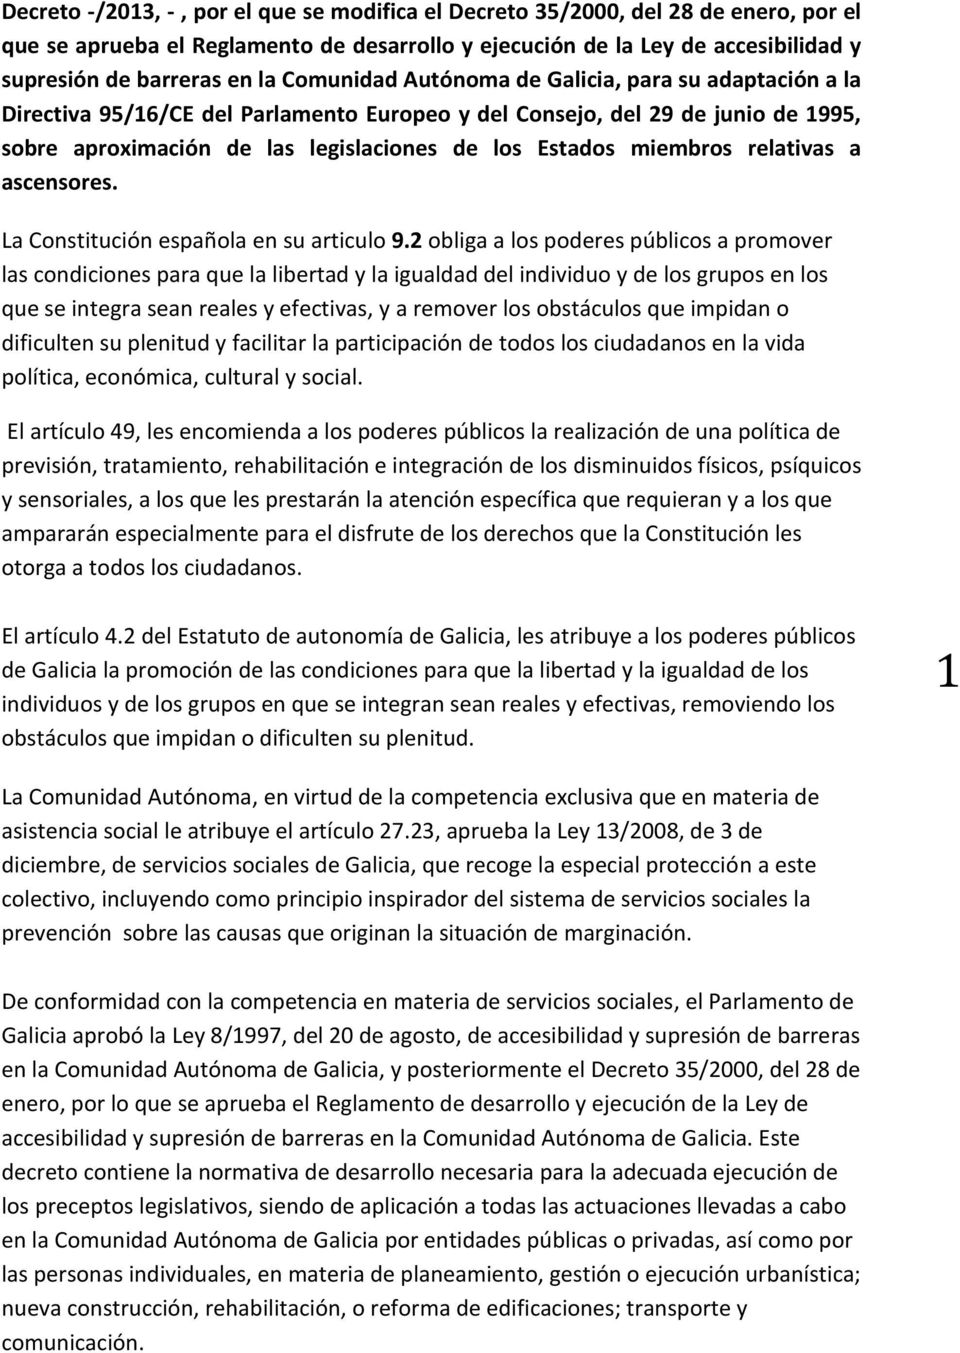 miembros relativas a ascensores. La Constitución española en su articulo 9.